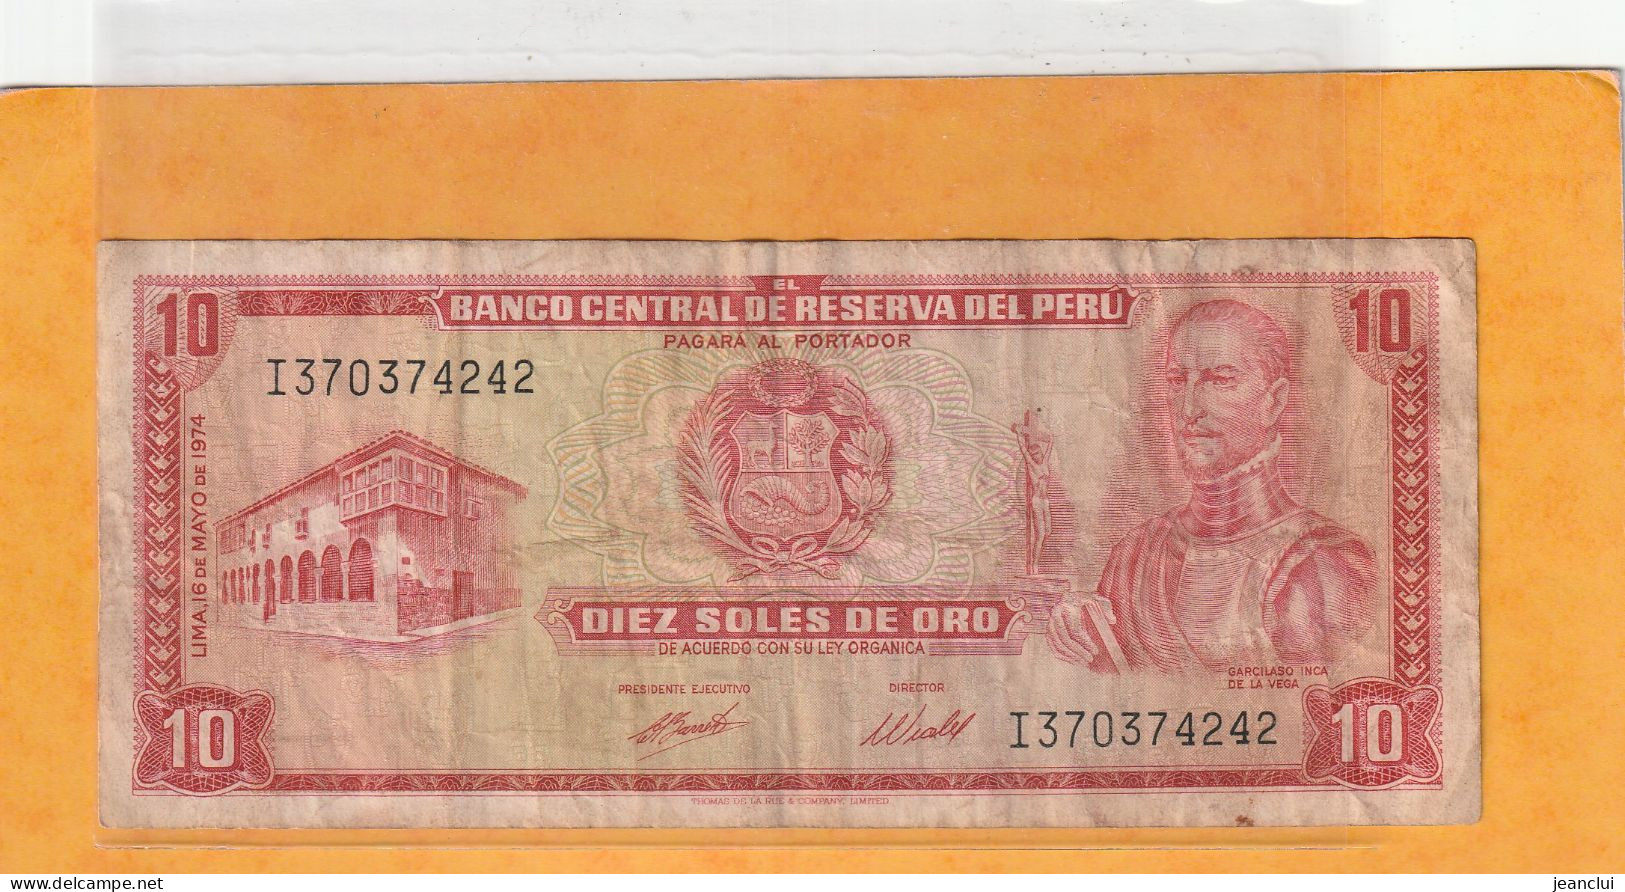 BANCO CENTRAL DE RESERVA DEL PERU .  10 SOLES DE ORO  .  16 DE MAYO DE 1974  . N°  I 3703742 .  2 SCANNES  .  ETAT USITE - Peru